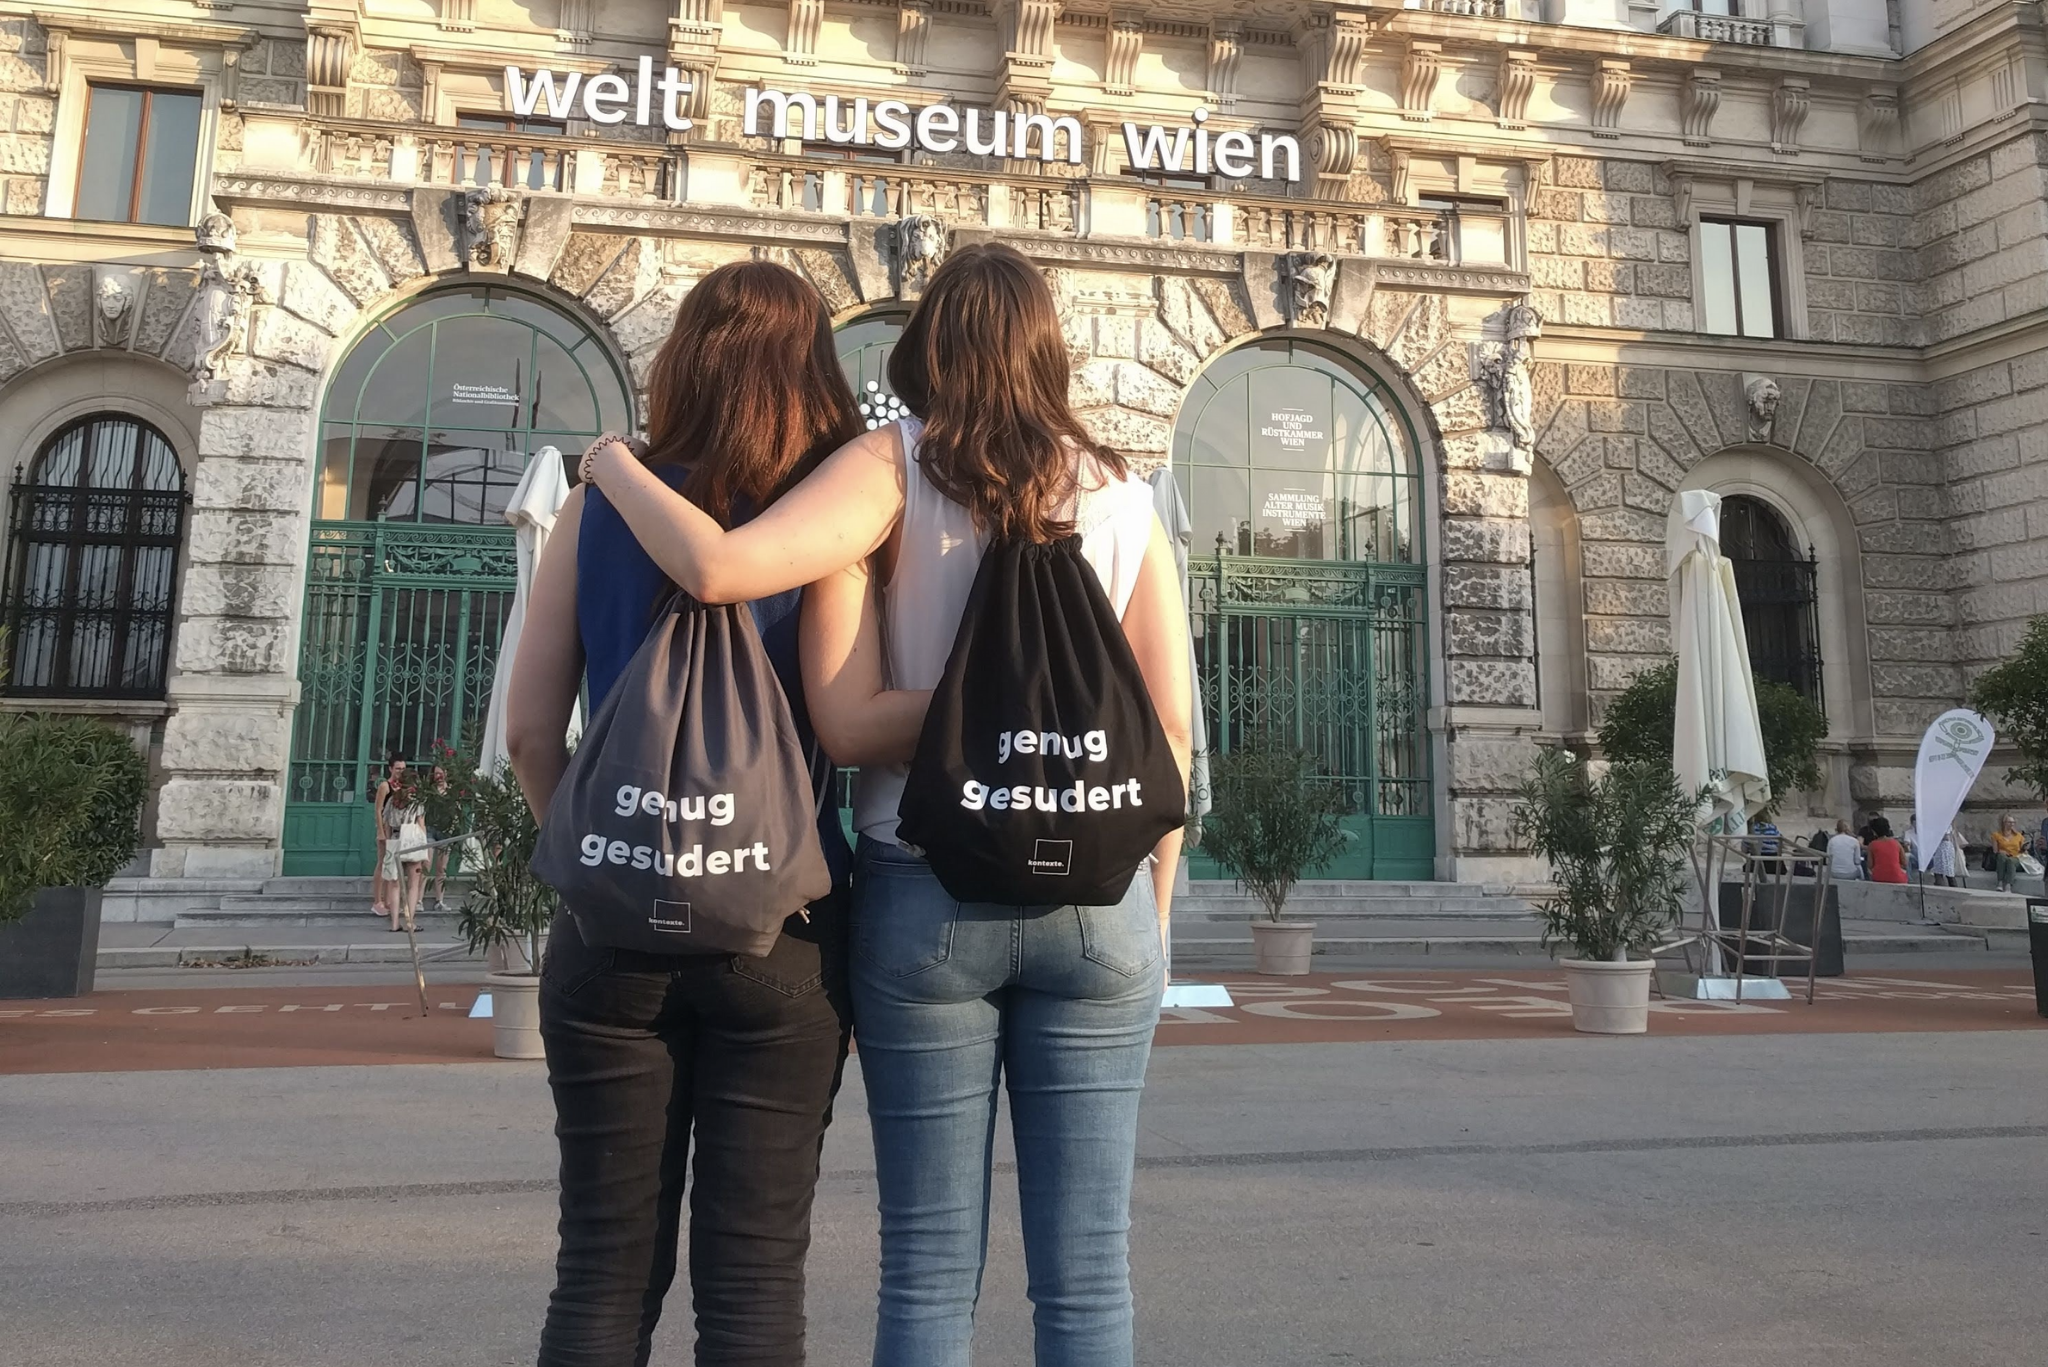 2 junge Frauen vom Verein kontexte präsentieren ihre City-Rucksäcke, Aufdruck: "genug gesudert"